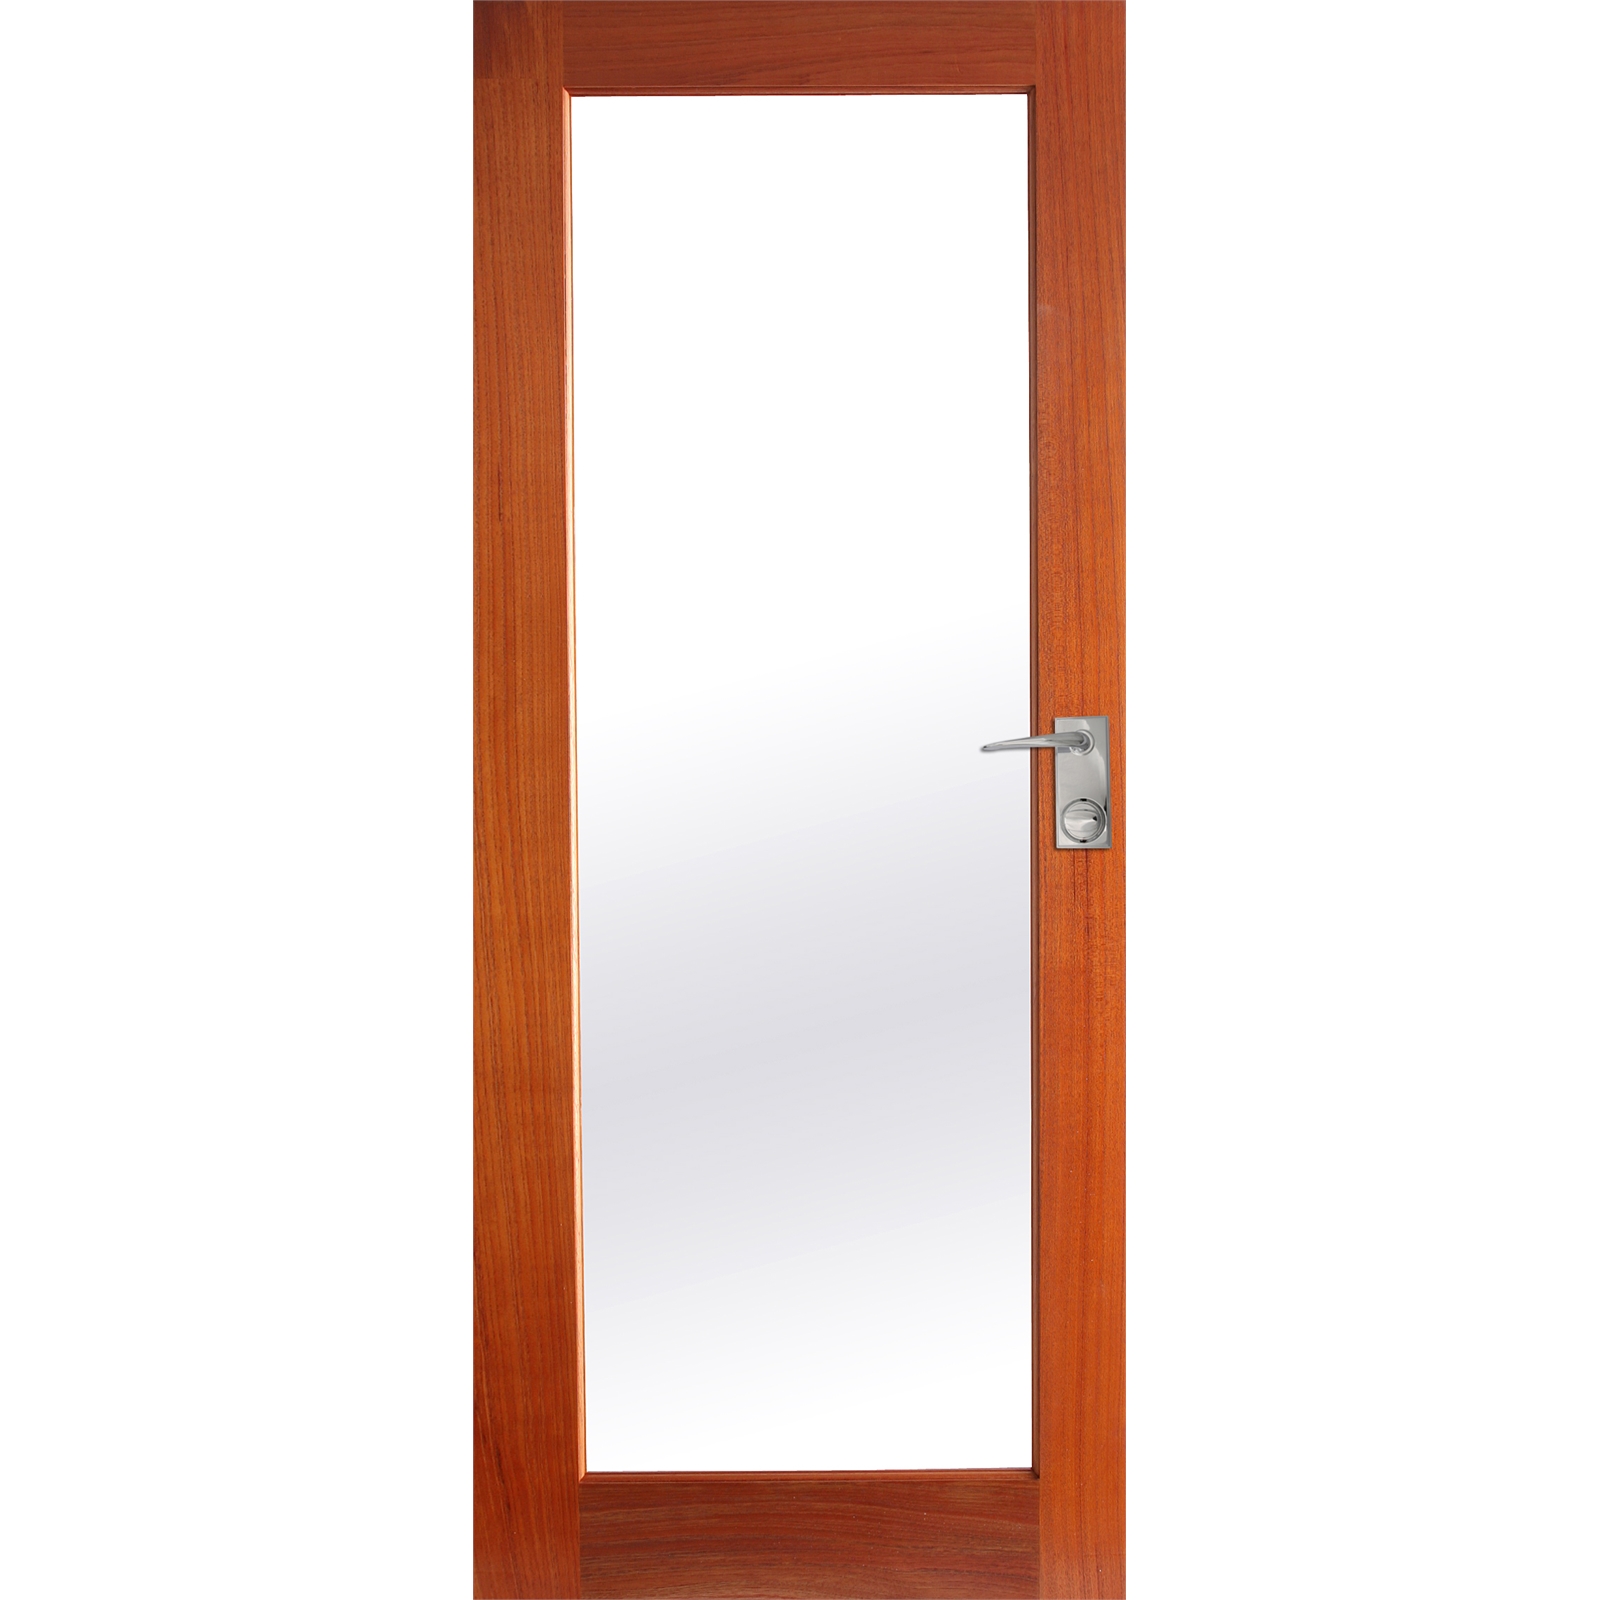 Hume Doors & Timber 2040 x 820 x 35mm Lincoln 1 Internal Door